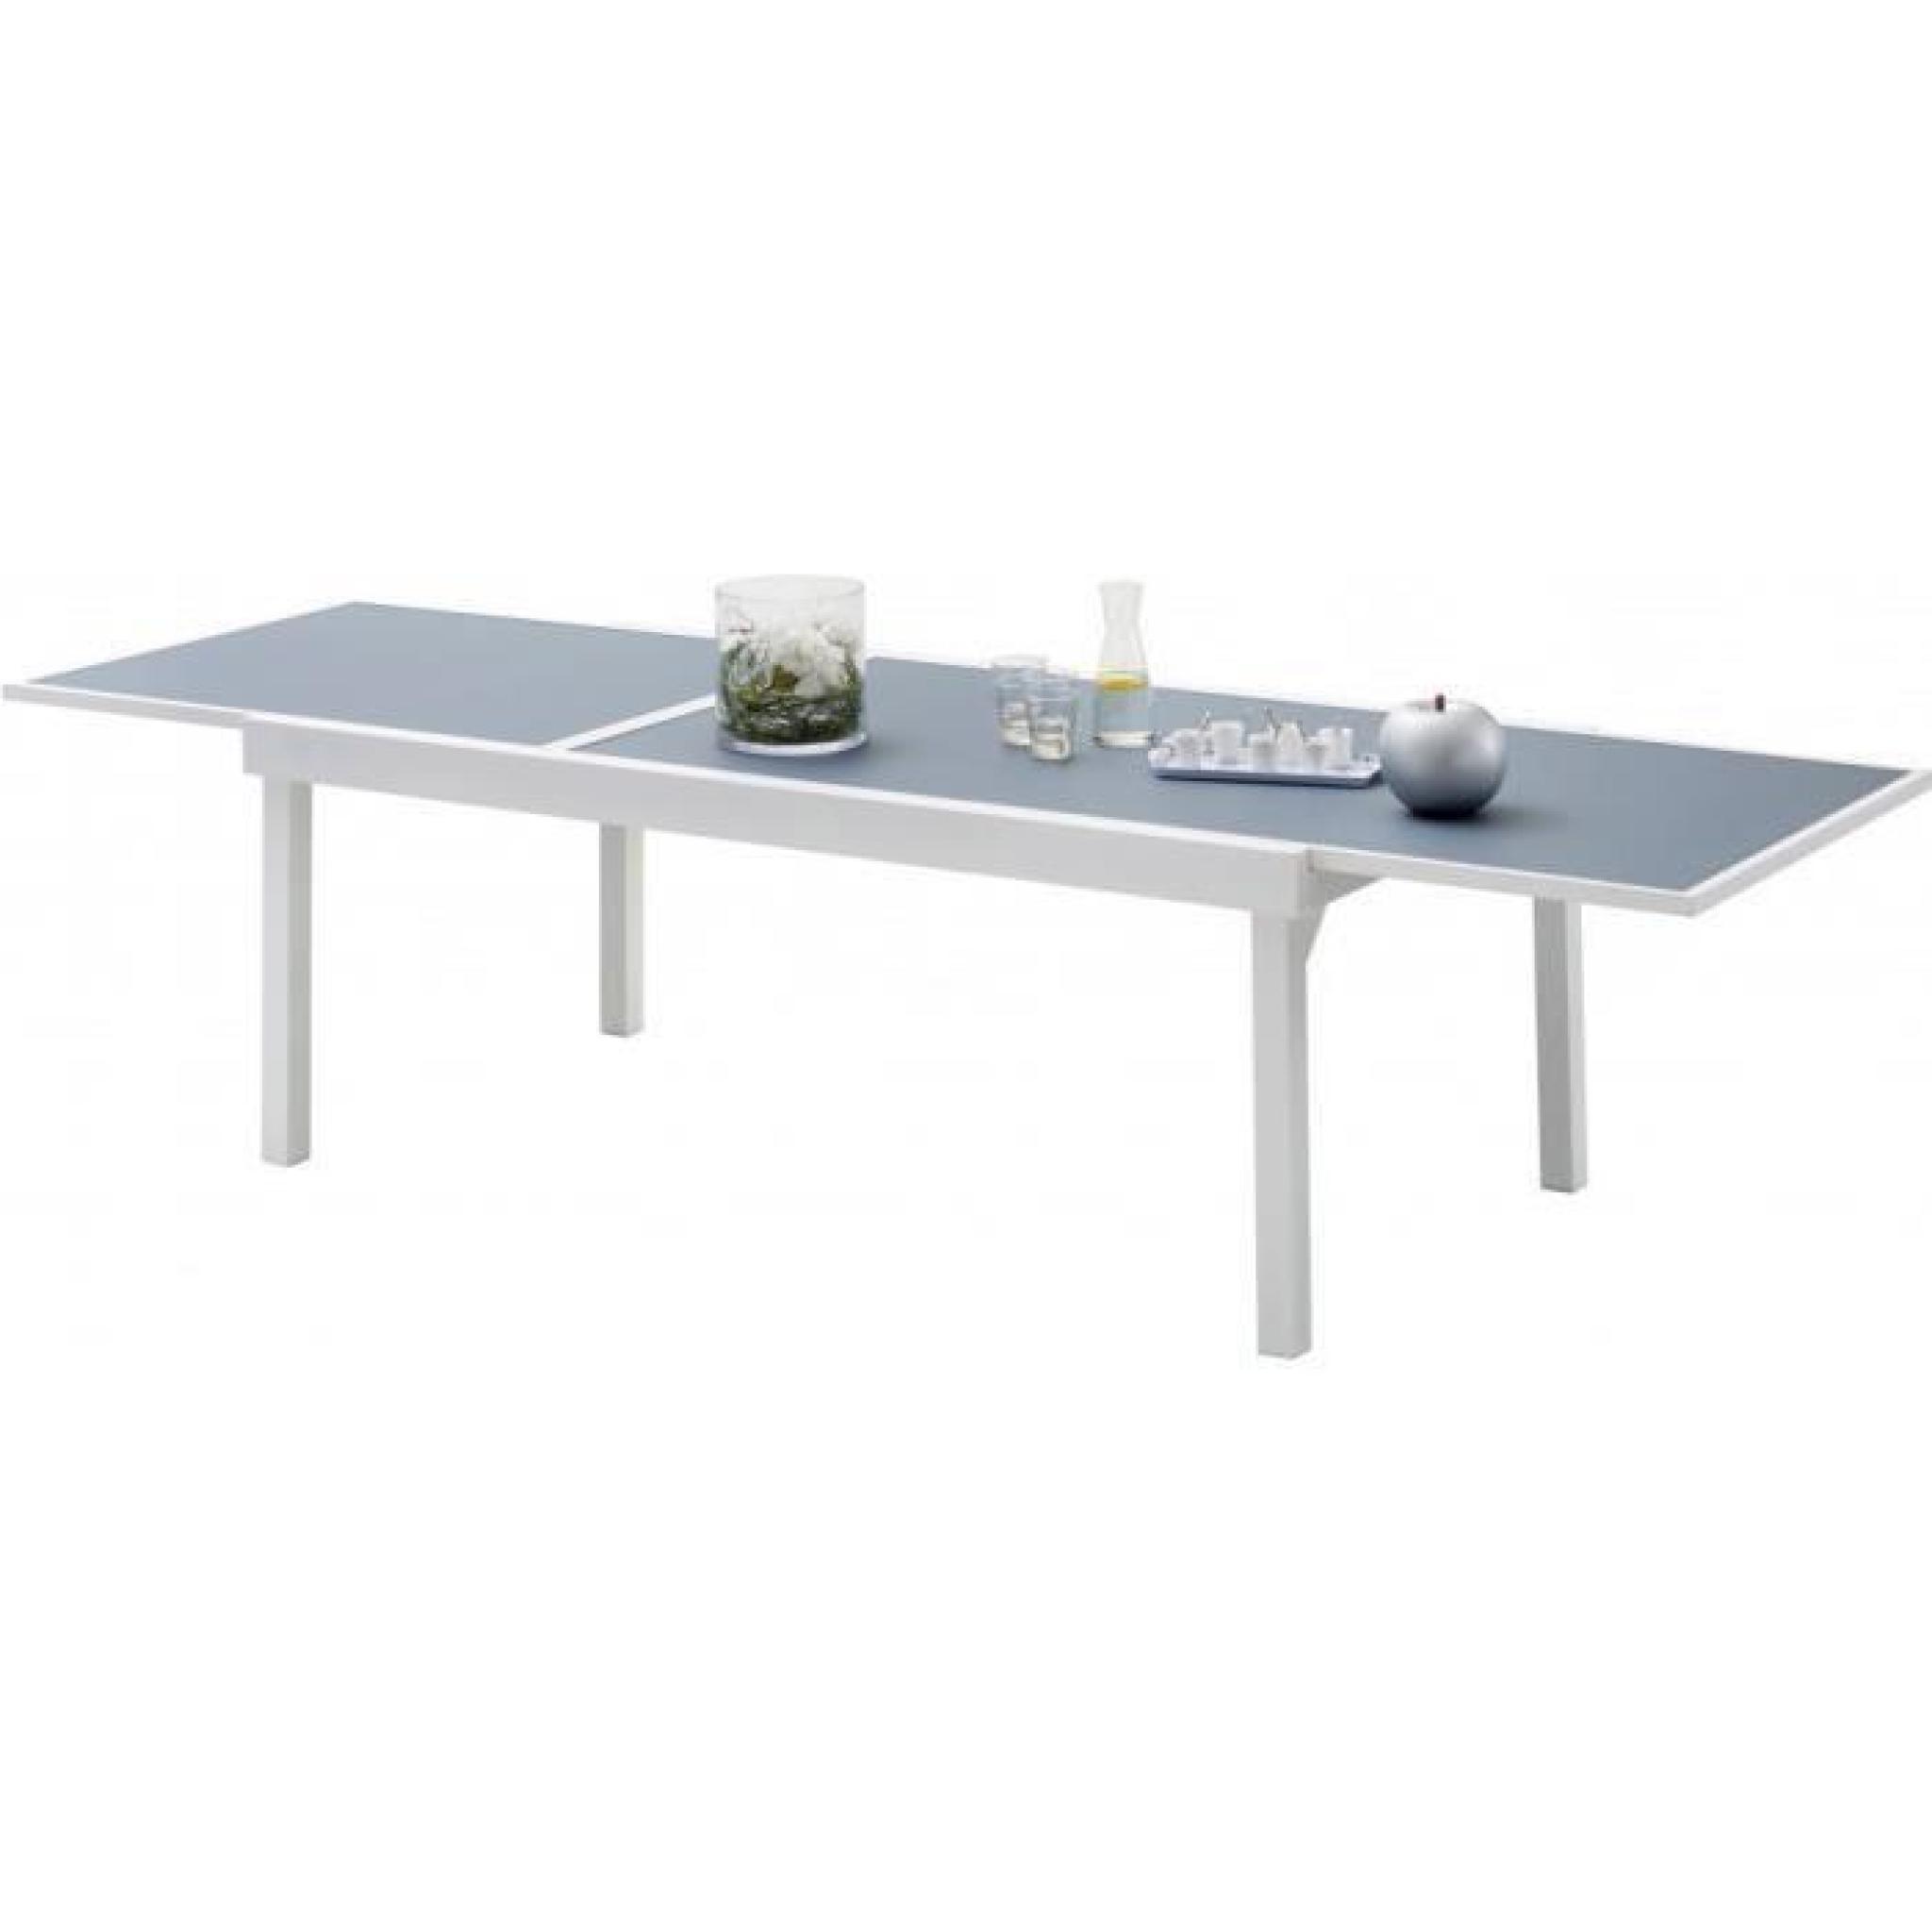 Table de jardin rectangulaire extensible aluminium blanc et polywood L135 pas cher